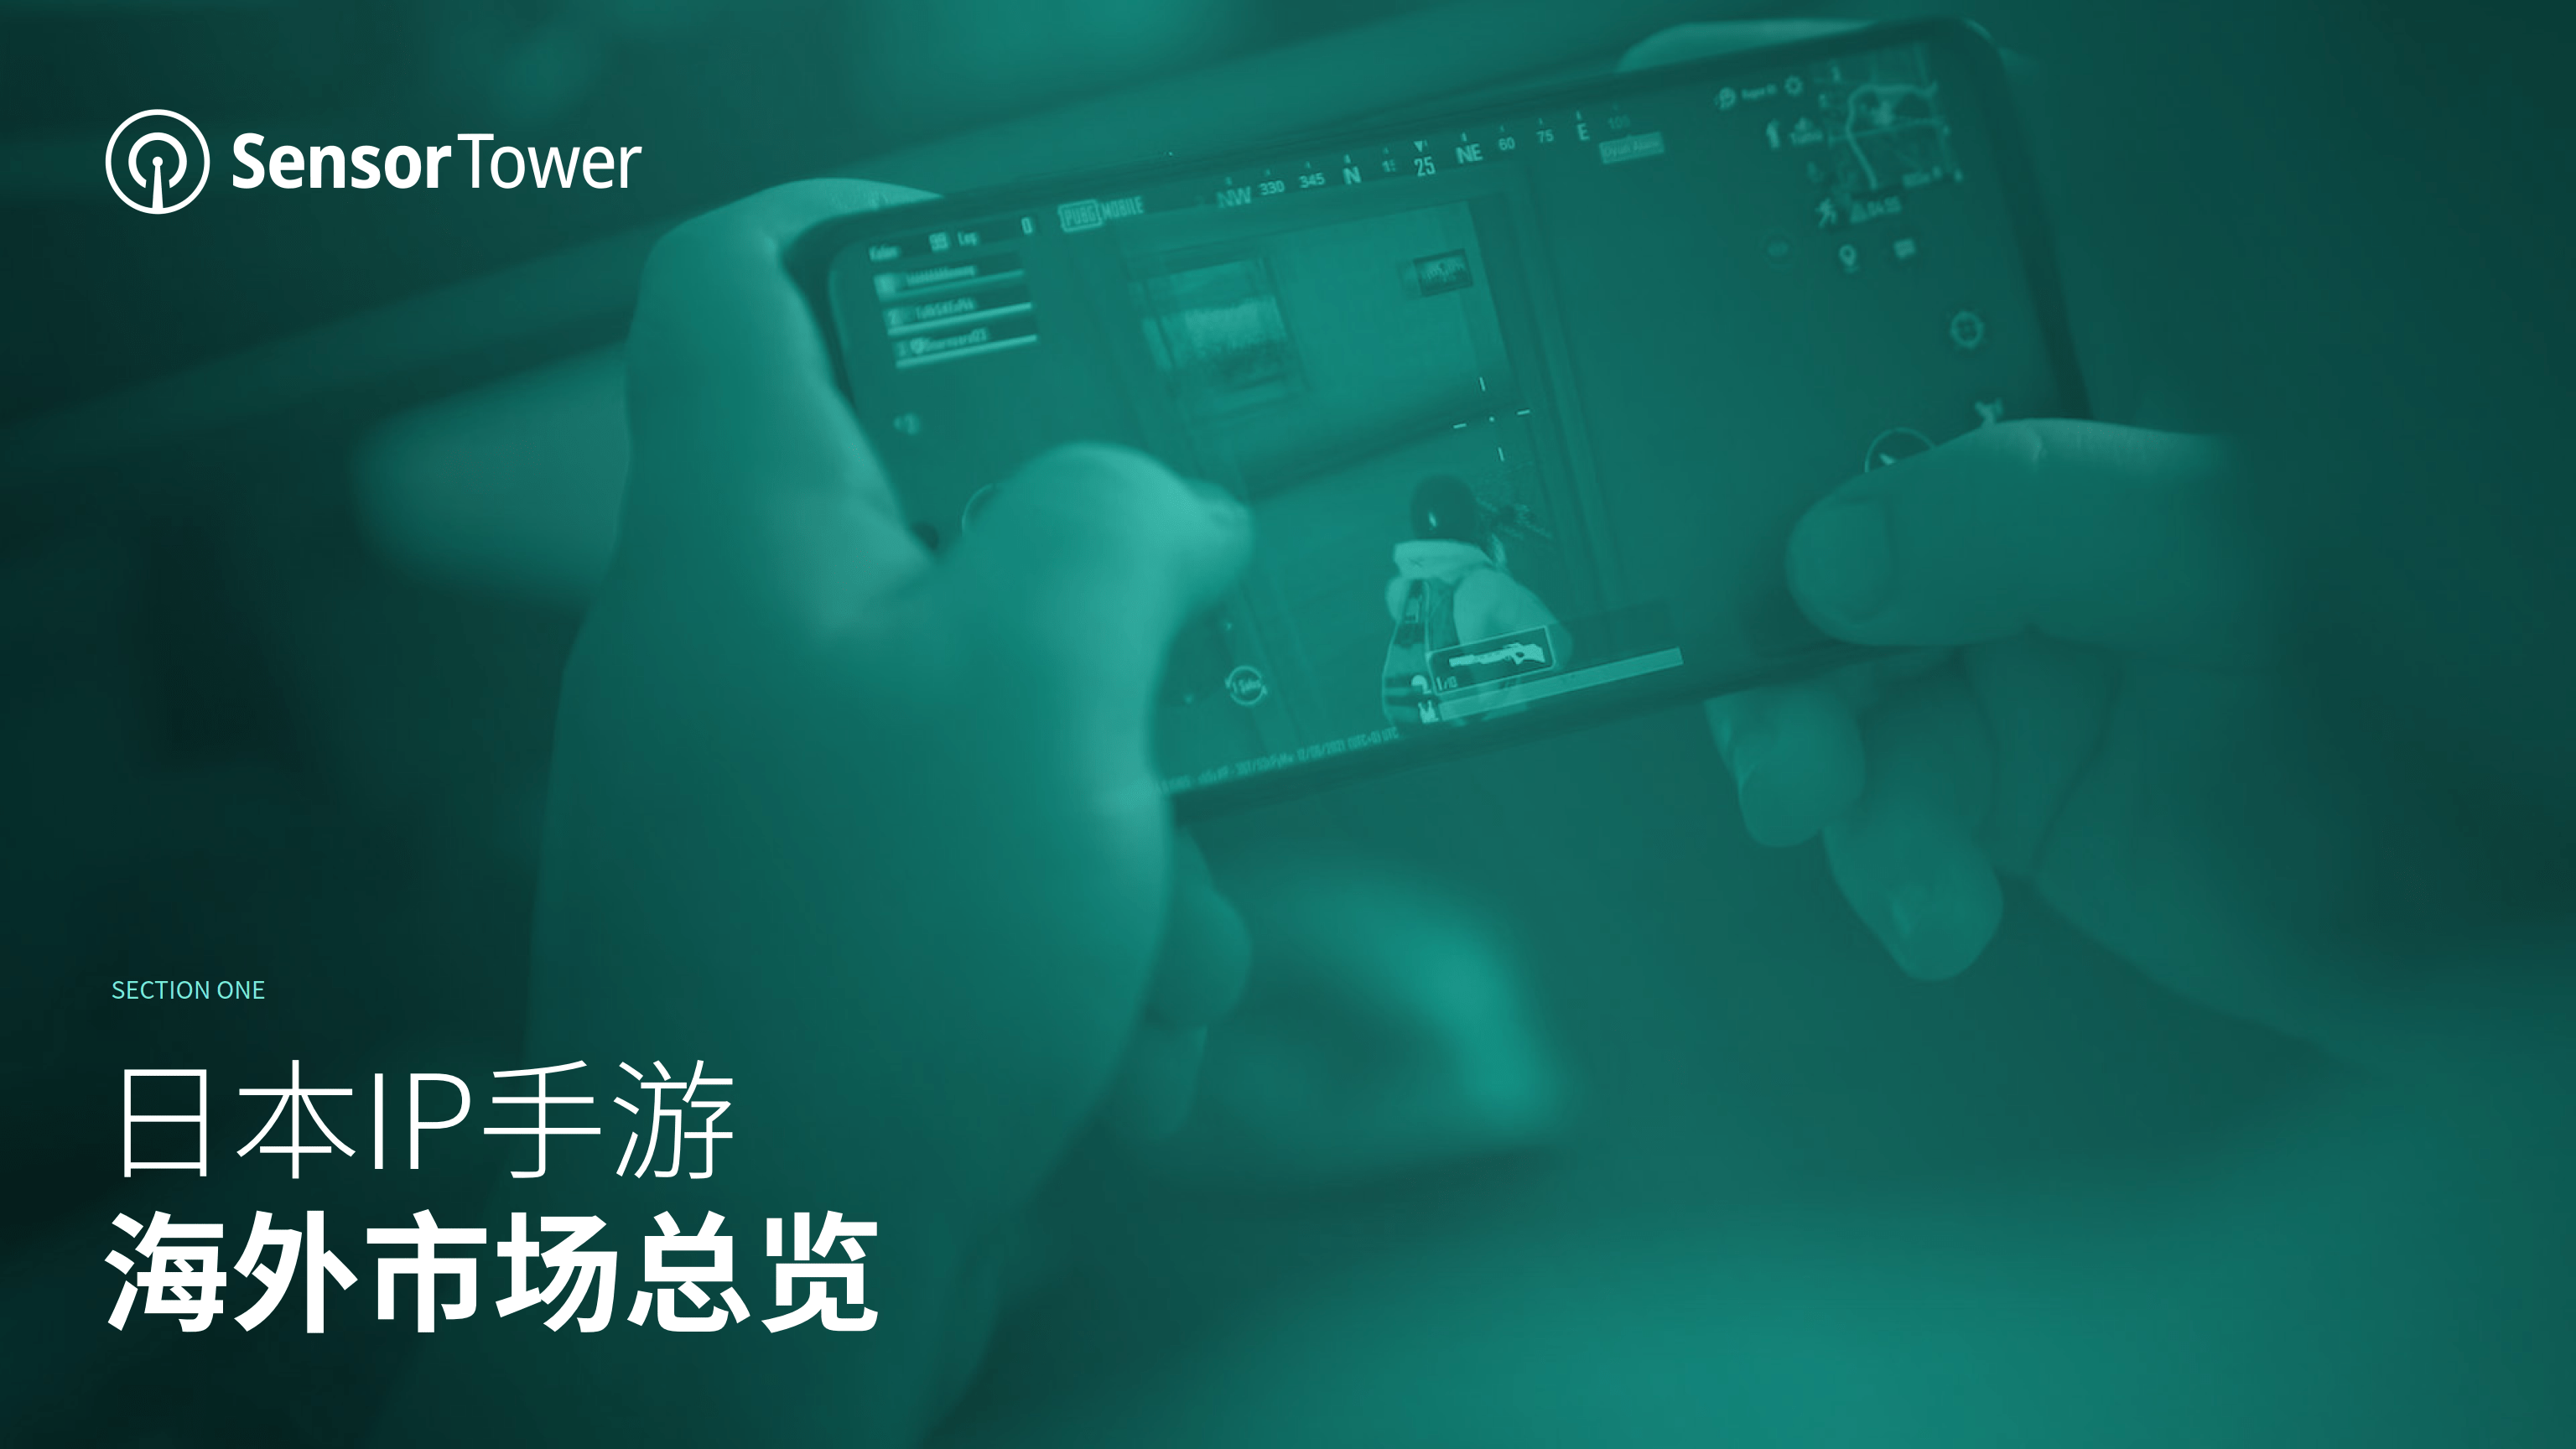 出租车手游推荐苹果版:2022年日本IP手游海外市场洞察(附下载)-第4张图片-太平洋在线